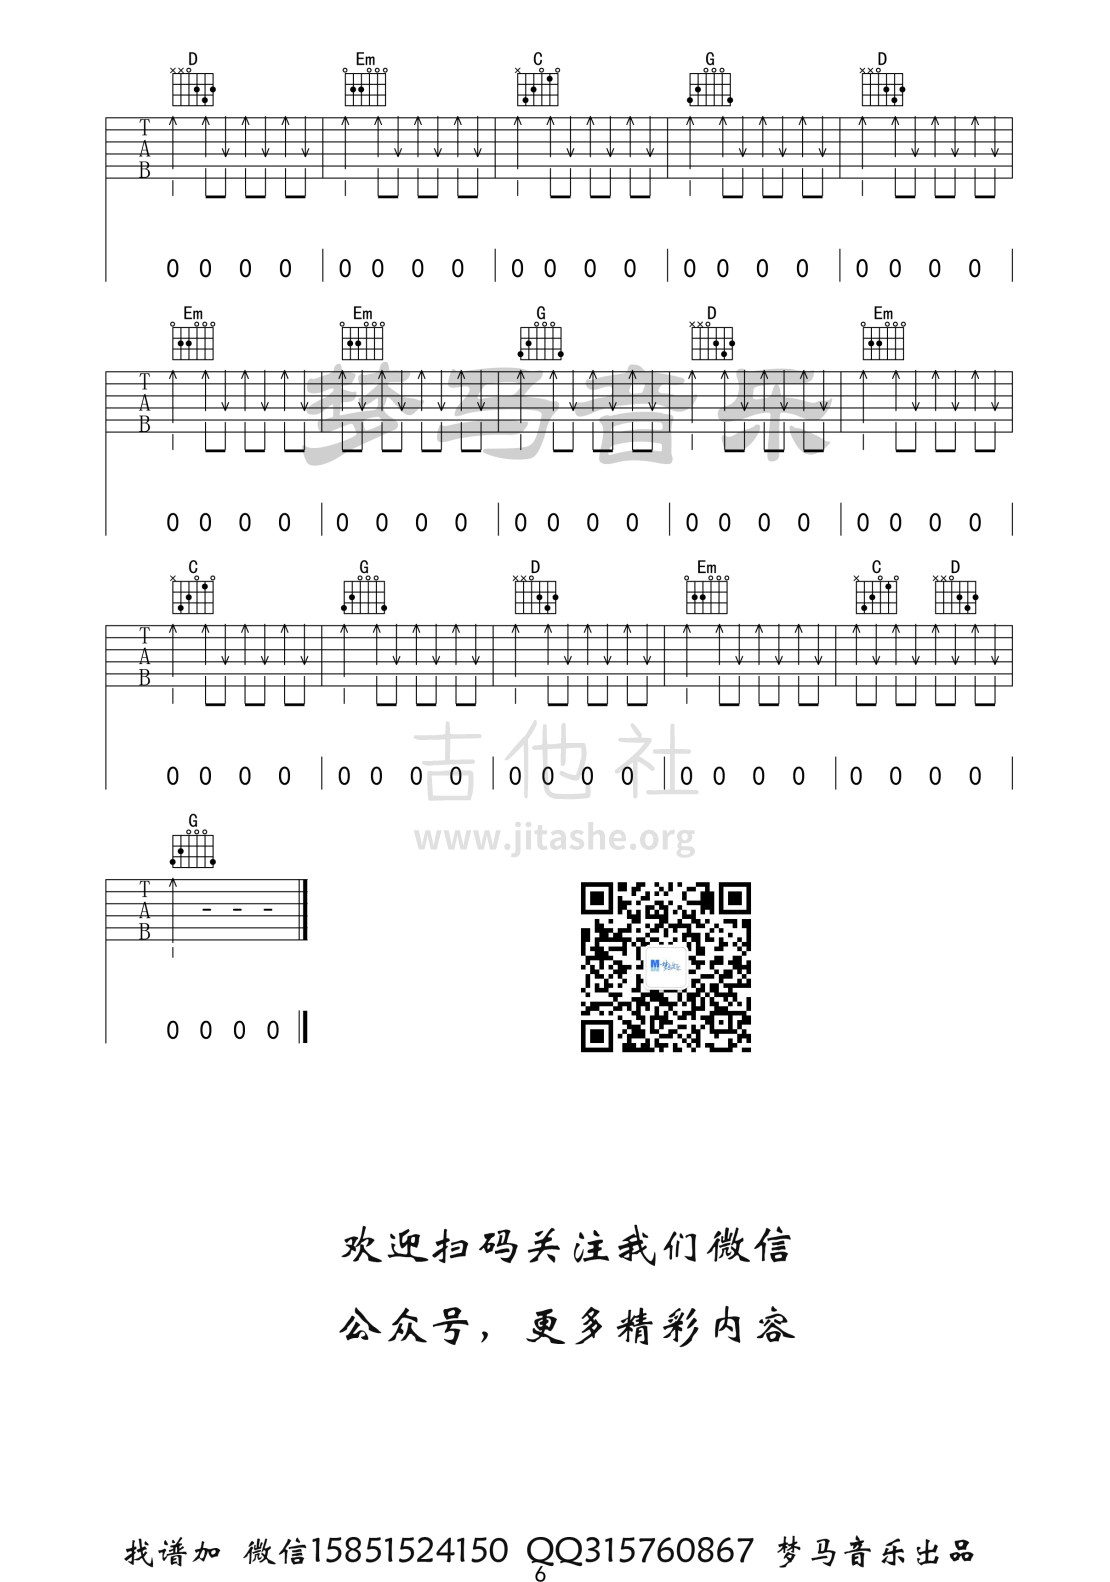 打印:步行街的吉他手吉他谱_张闯_步行街的吉他手-6.jpg